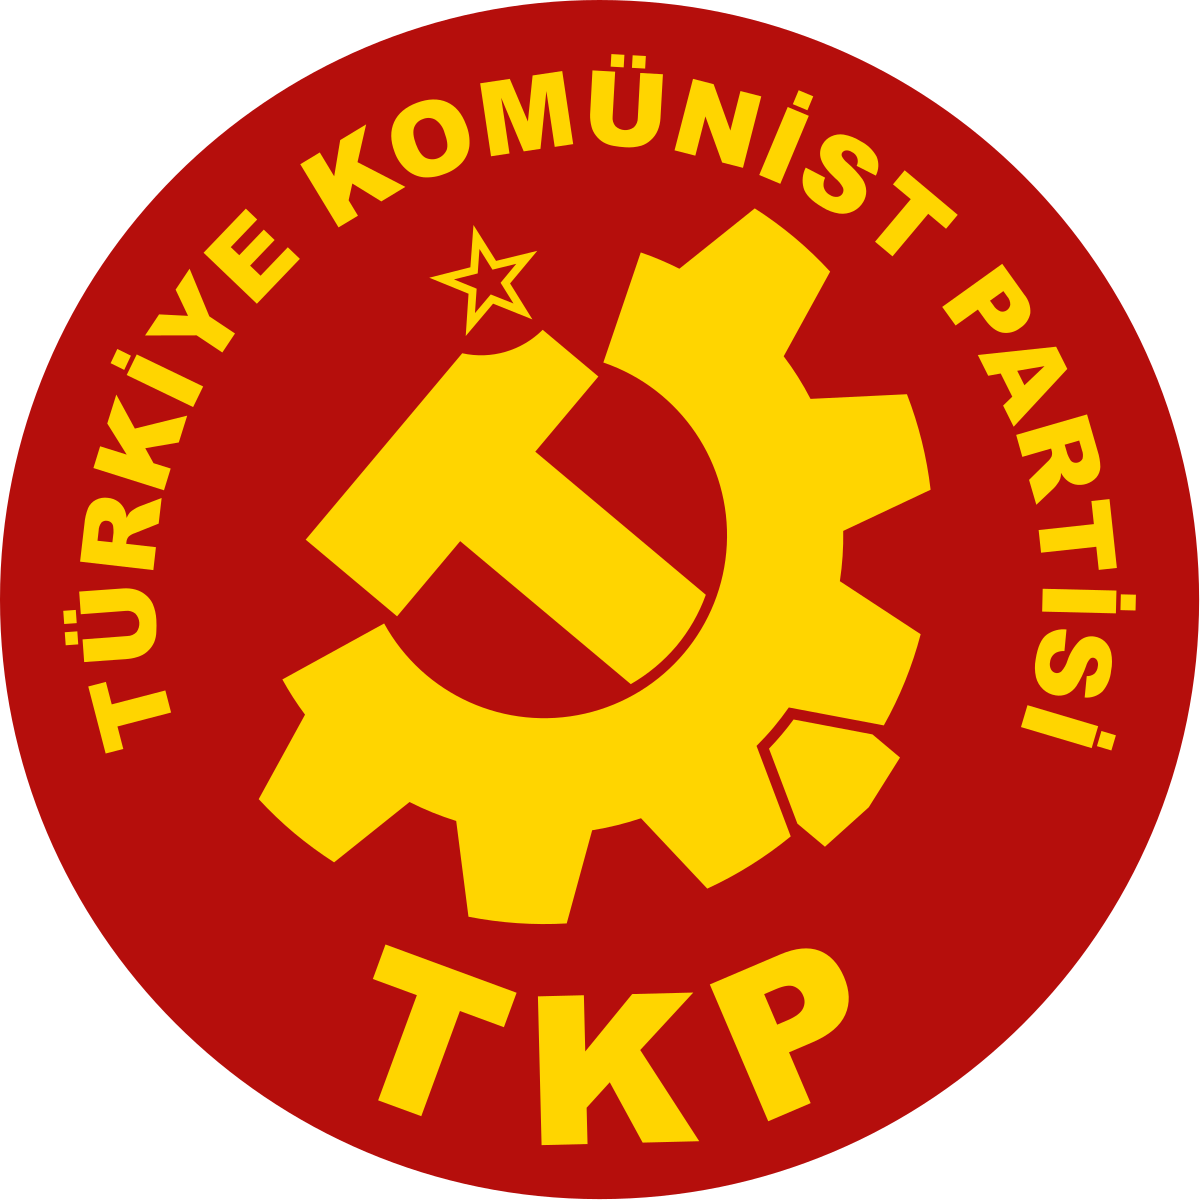 tkp-logo-svg.png